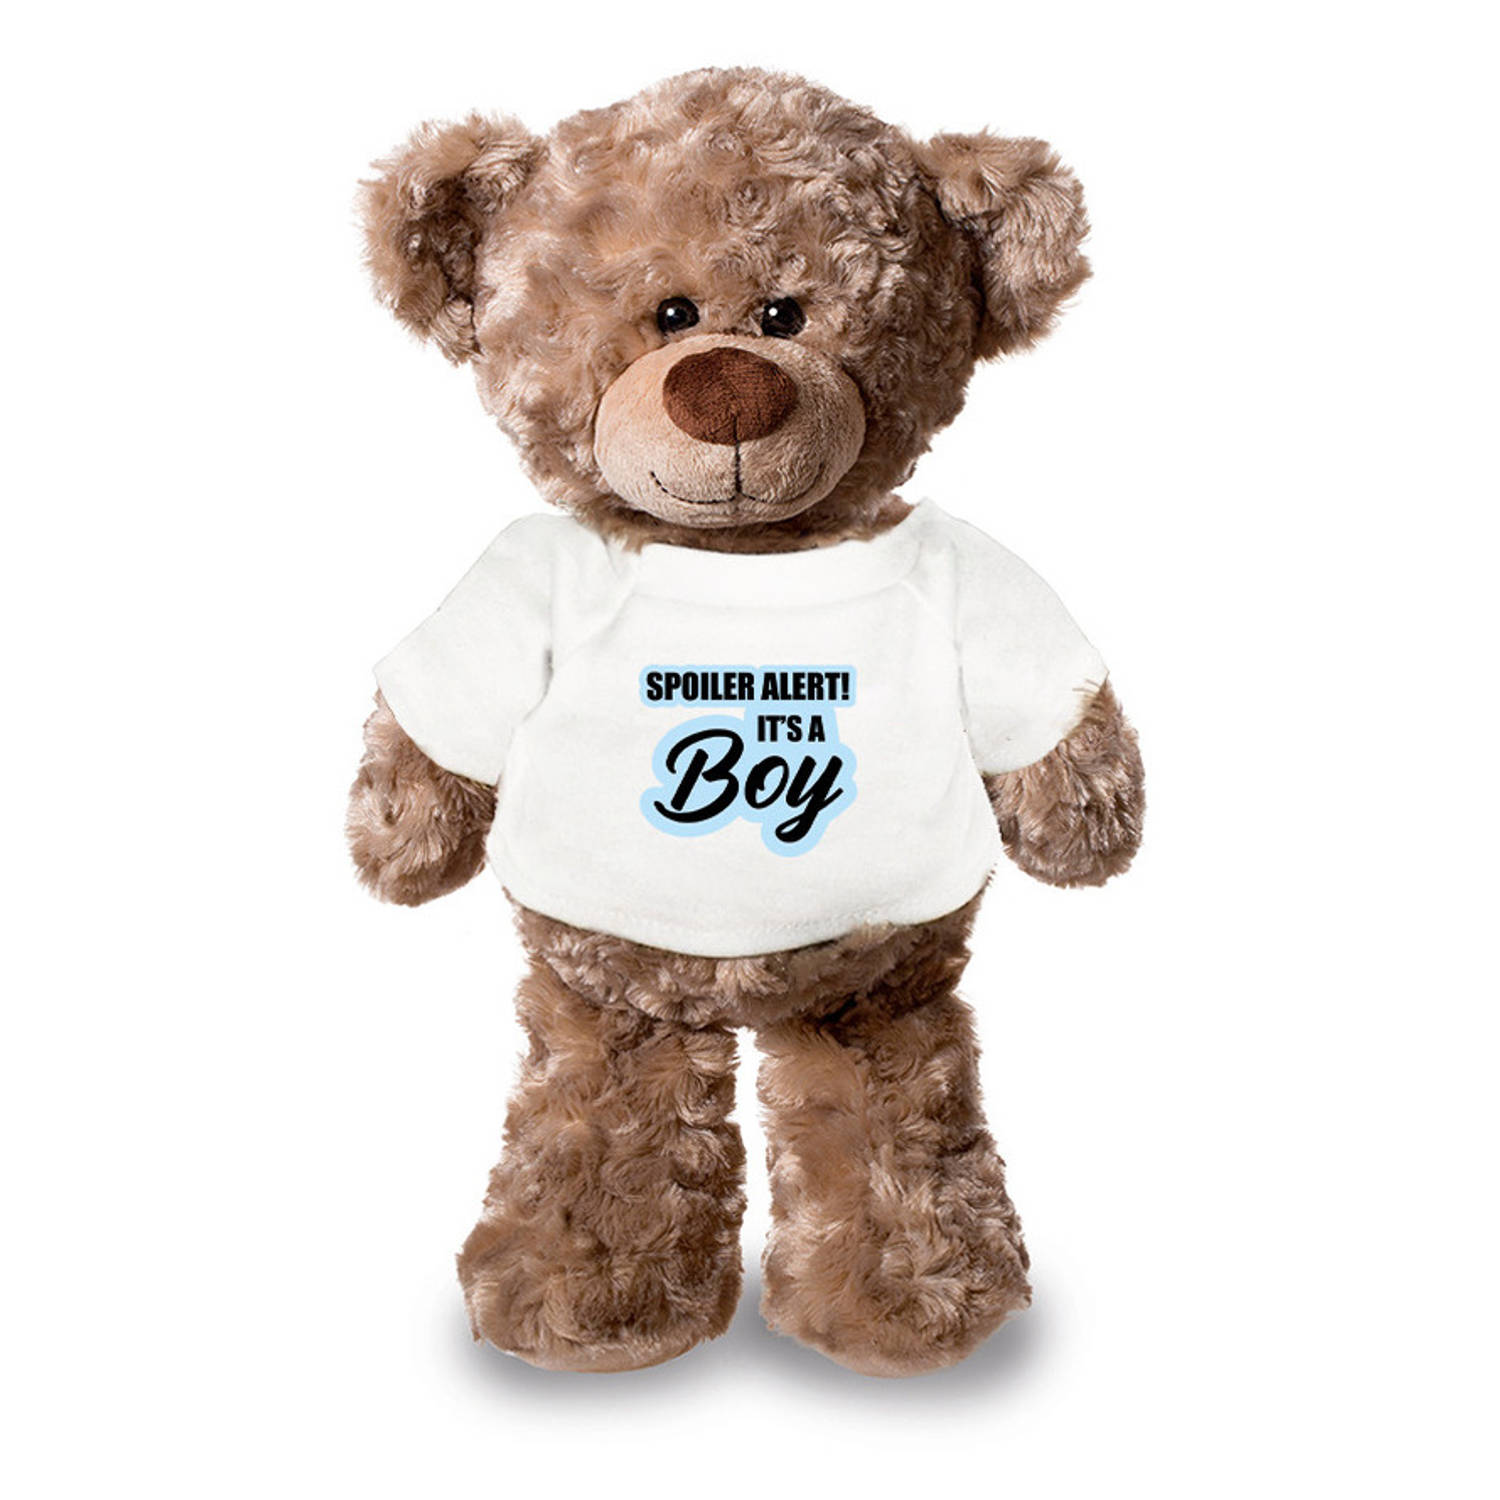 Spoiler alert boy aankondiging jongen pluche teddybeer knuffel 24 cm Knuffelberen